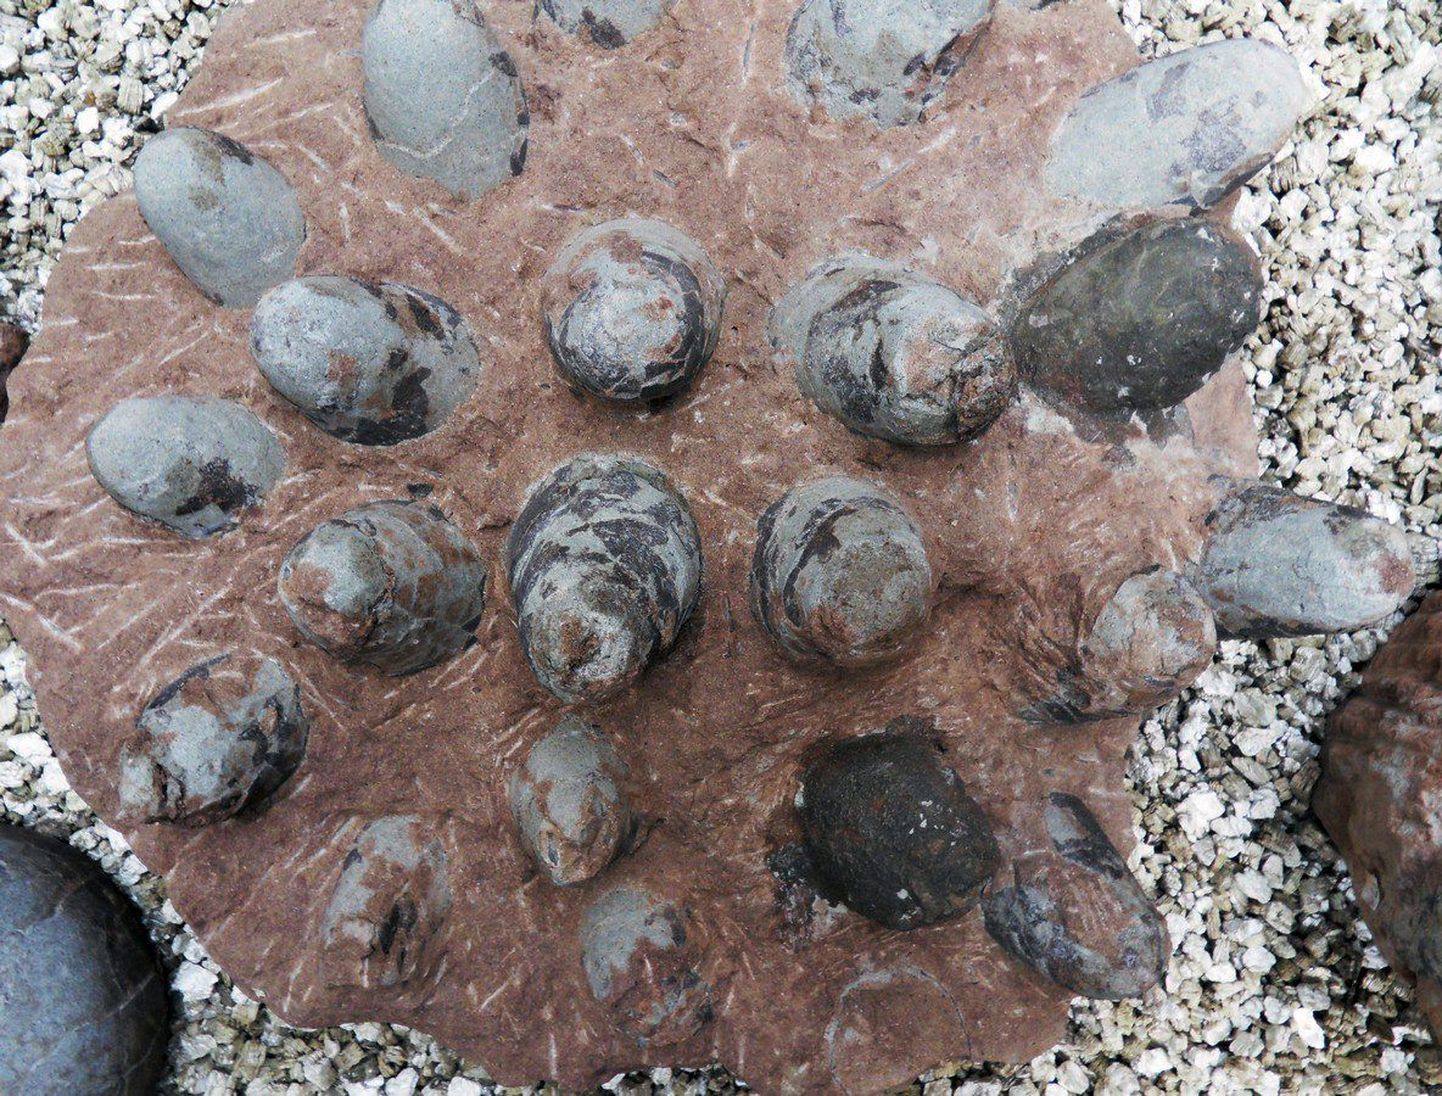 Hiidsisaliku fossiliseerunud munad